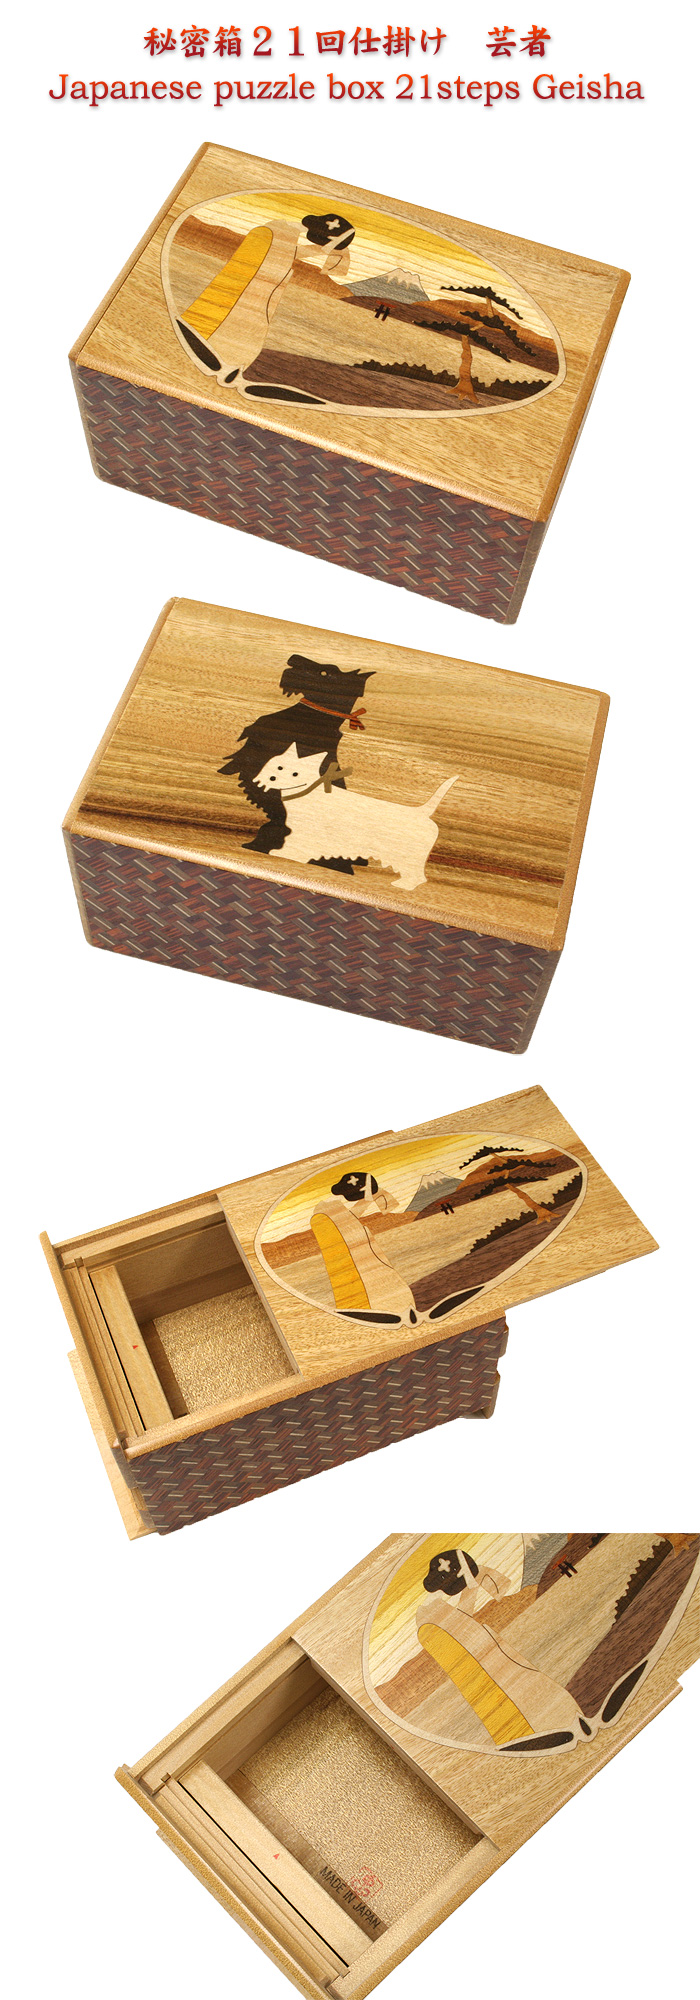 Japanese puzzle box 21steps Geisha